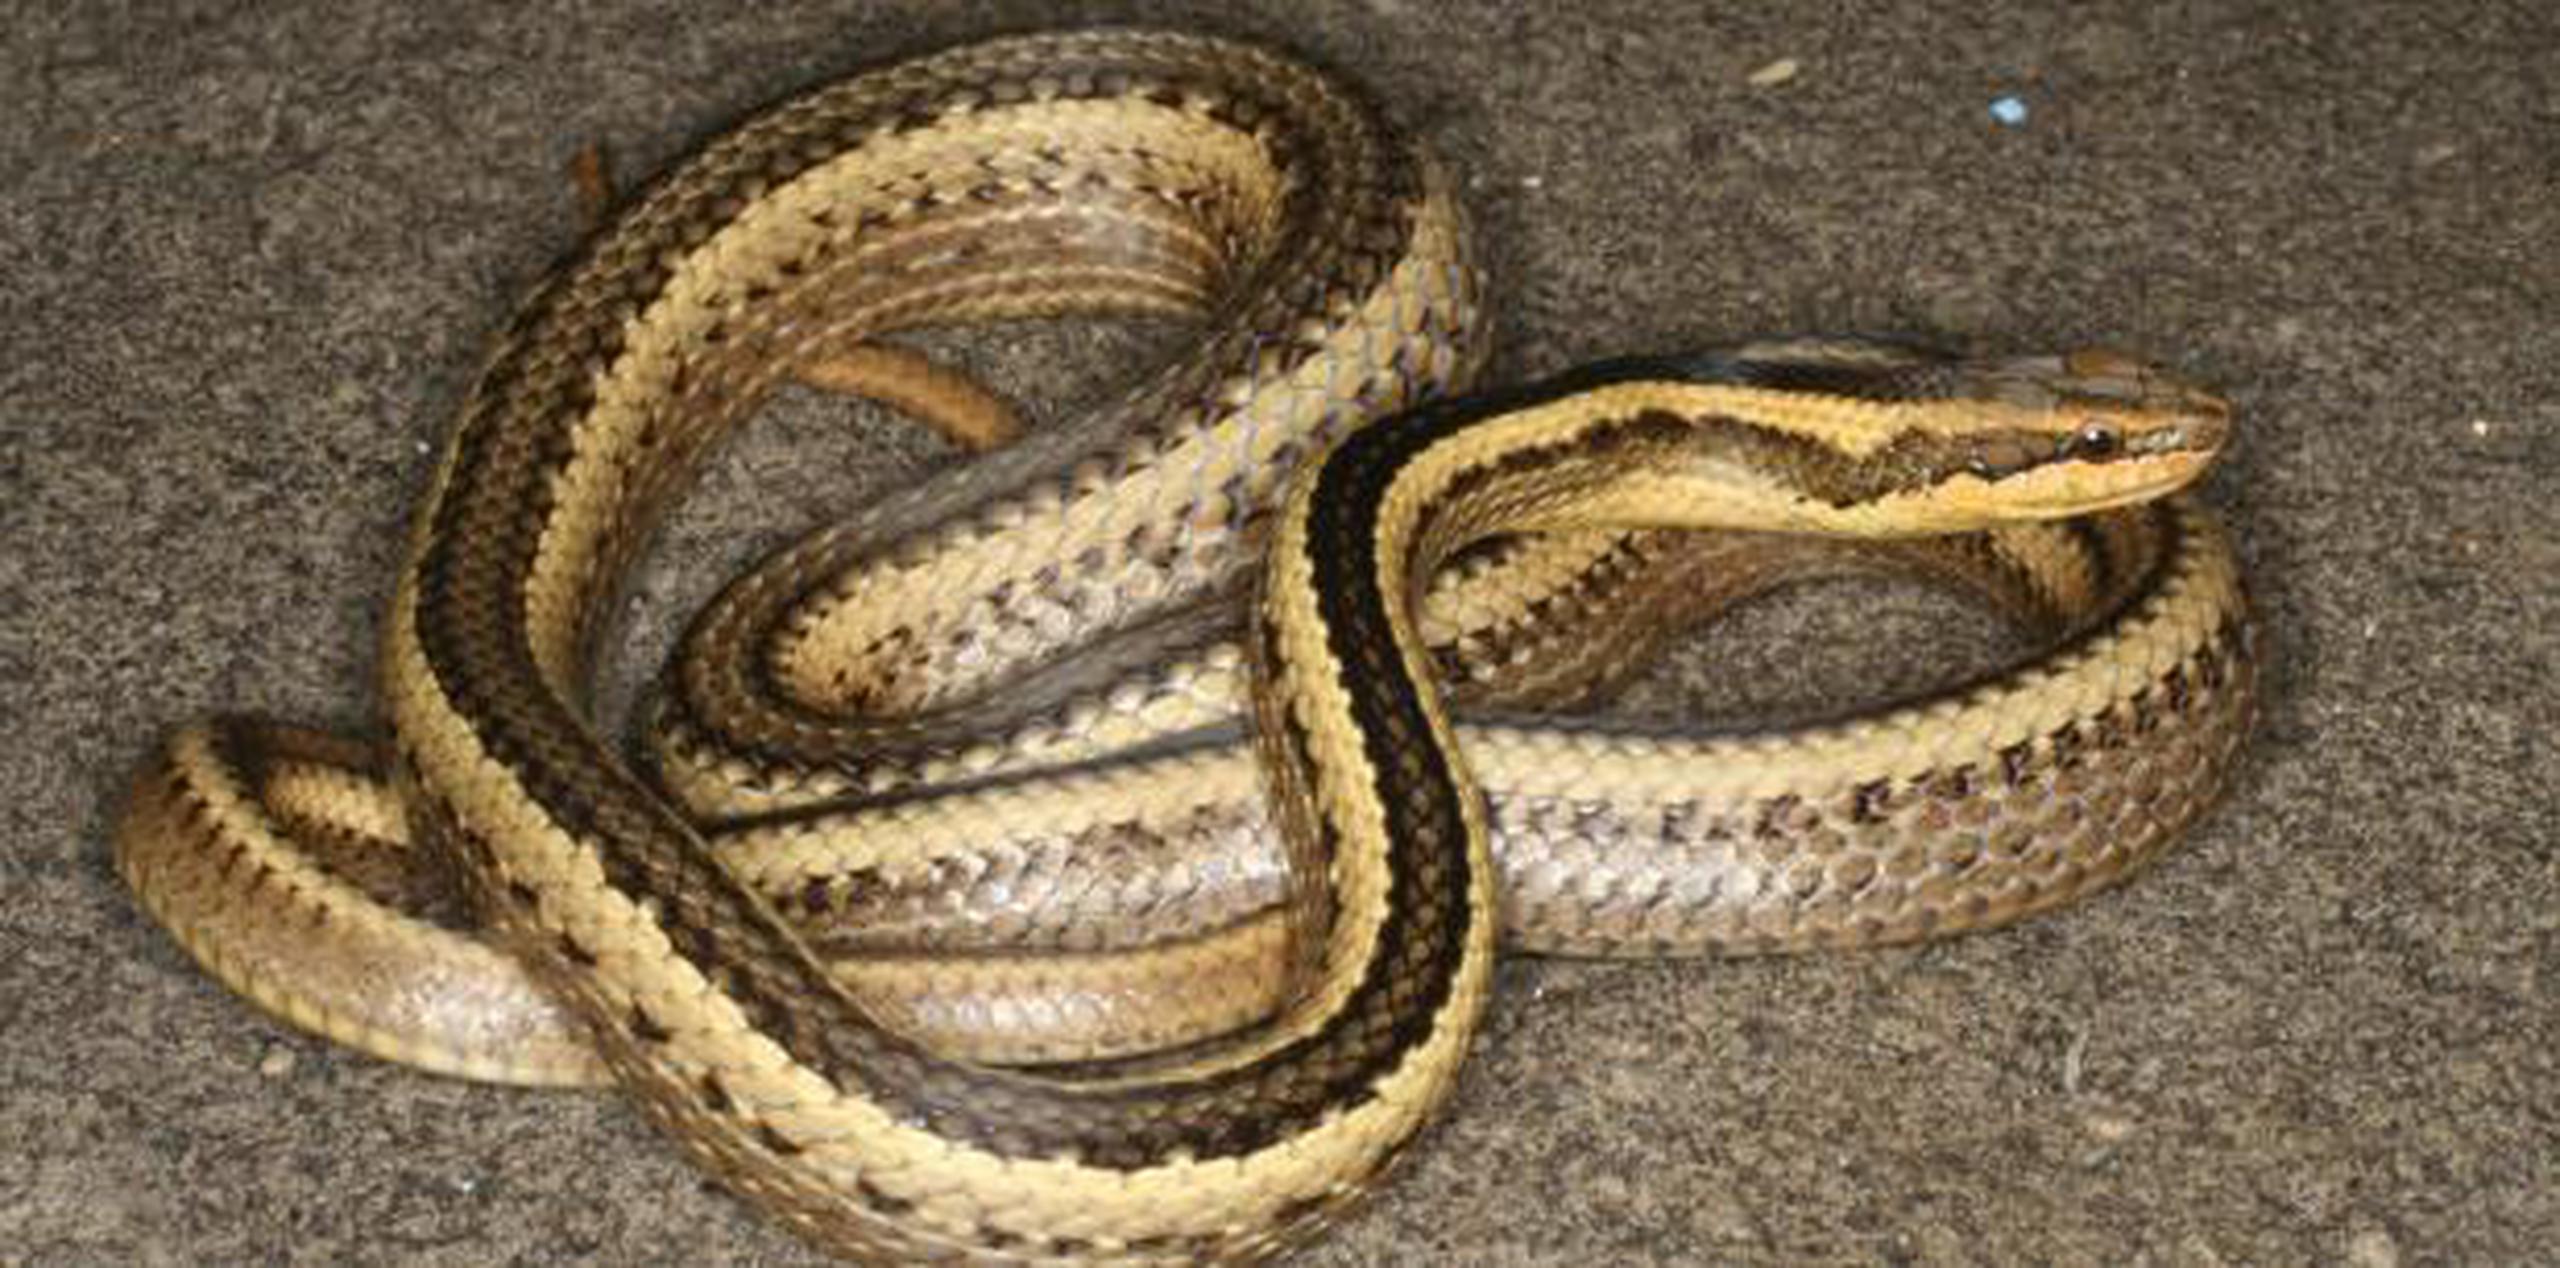 La serpiente nombrada en honor al biólogo ambiental Bob Thomas. (Cortesía de Miguel Trefaut Rodrigues vía AP)